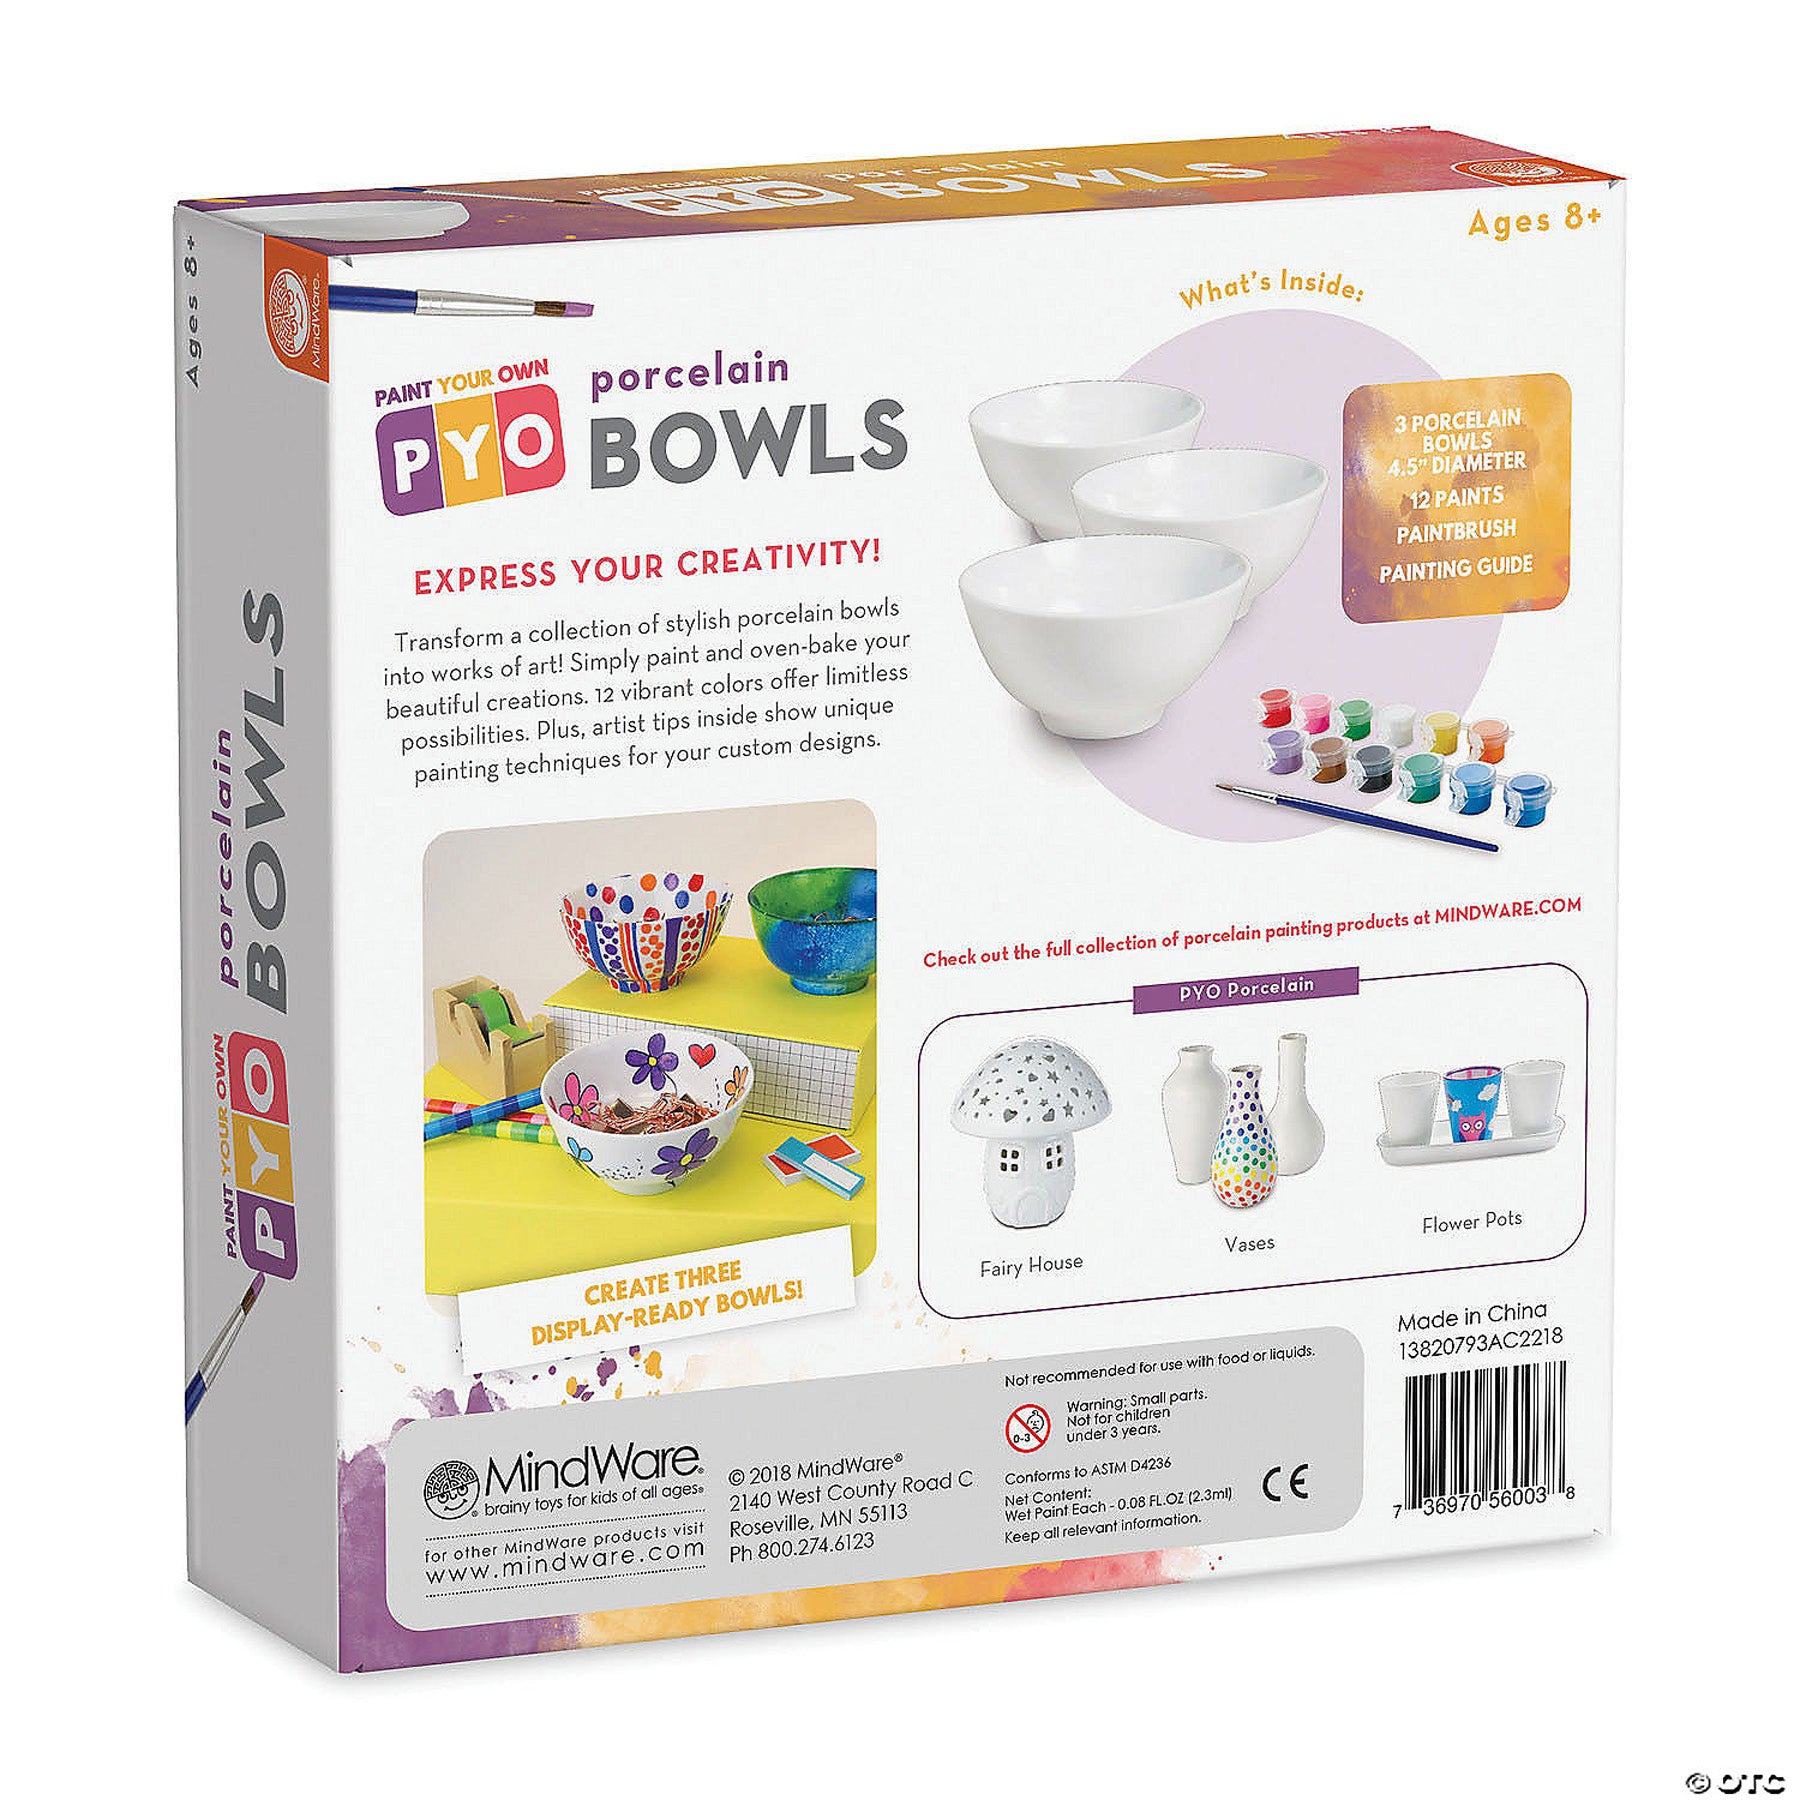 Mindware Paint Your Own Porcelain Bowls